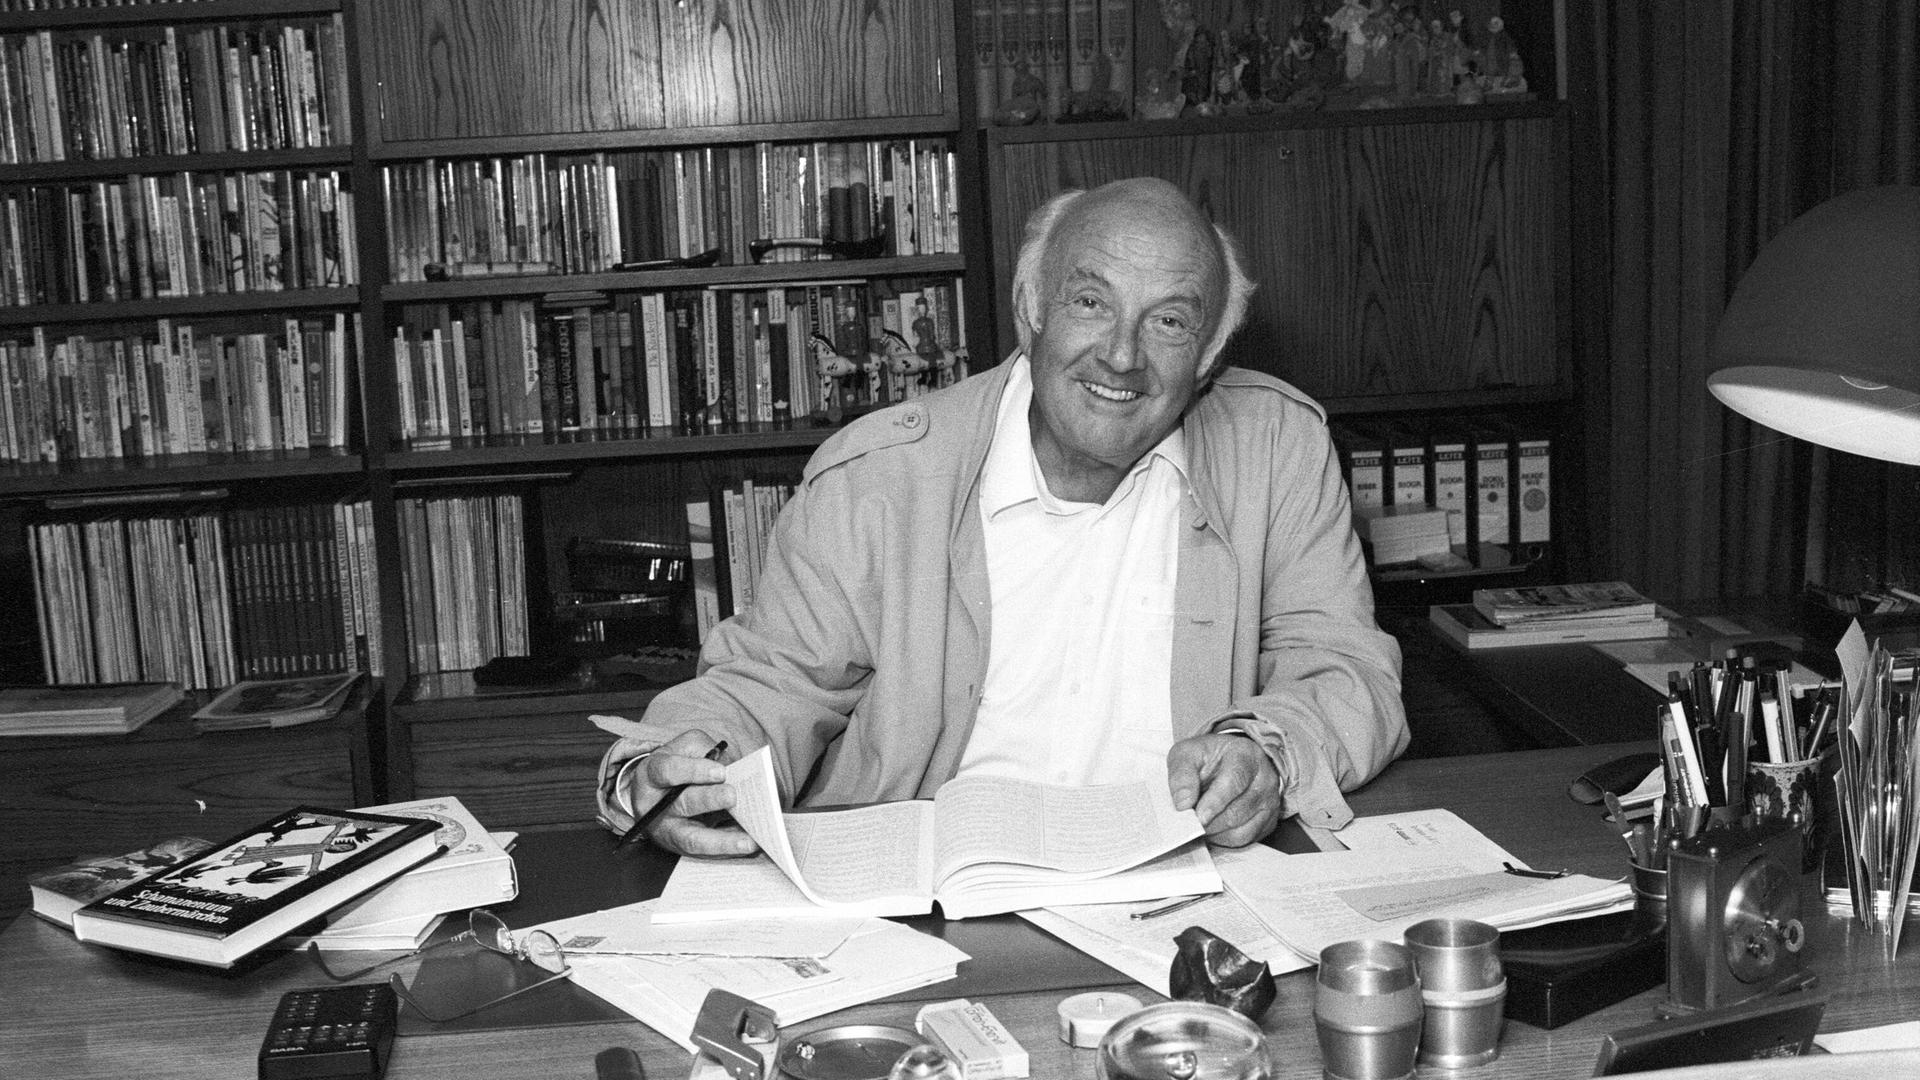 Kinderbuchautor Otfried Preußler sitzend am Schreibtisch in seinem Arbeitszimmer. Schwarz-weiß Aufnahme von 1988.